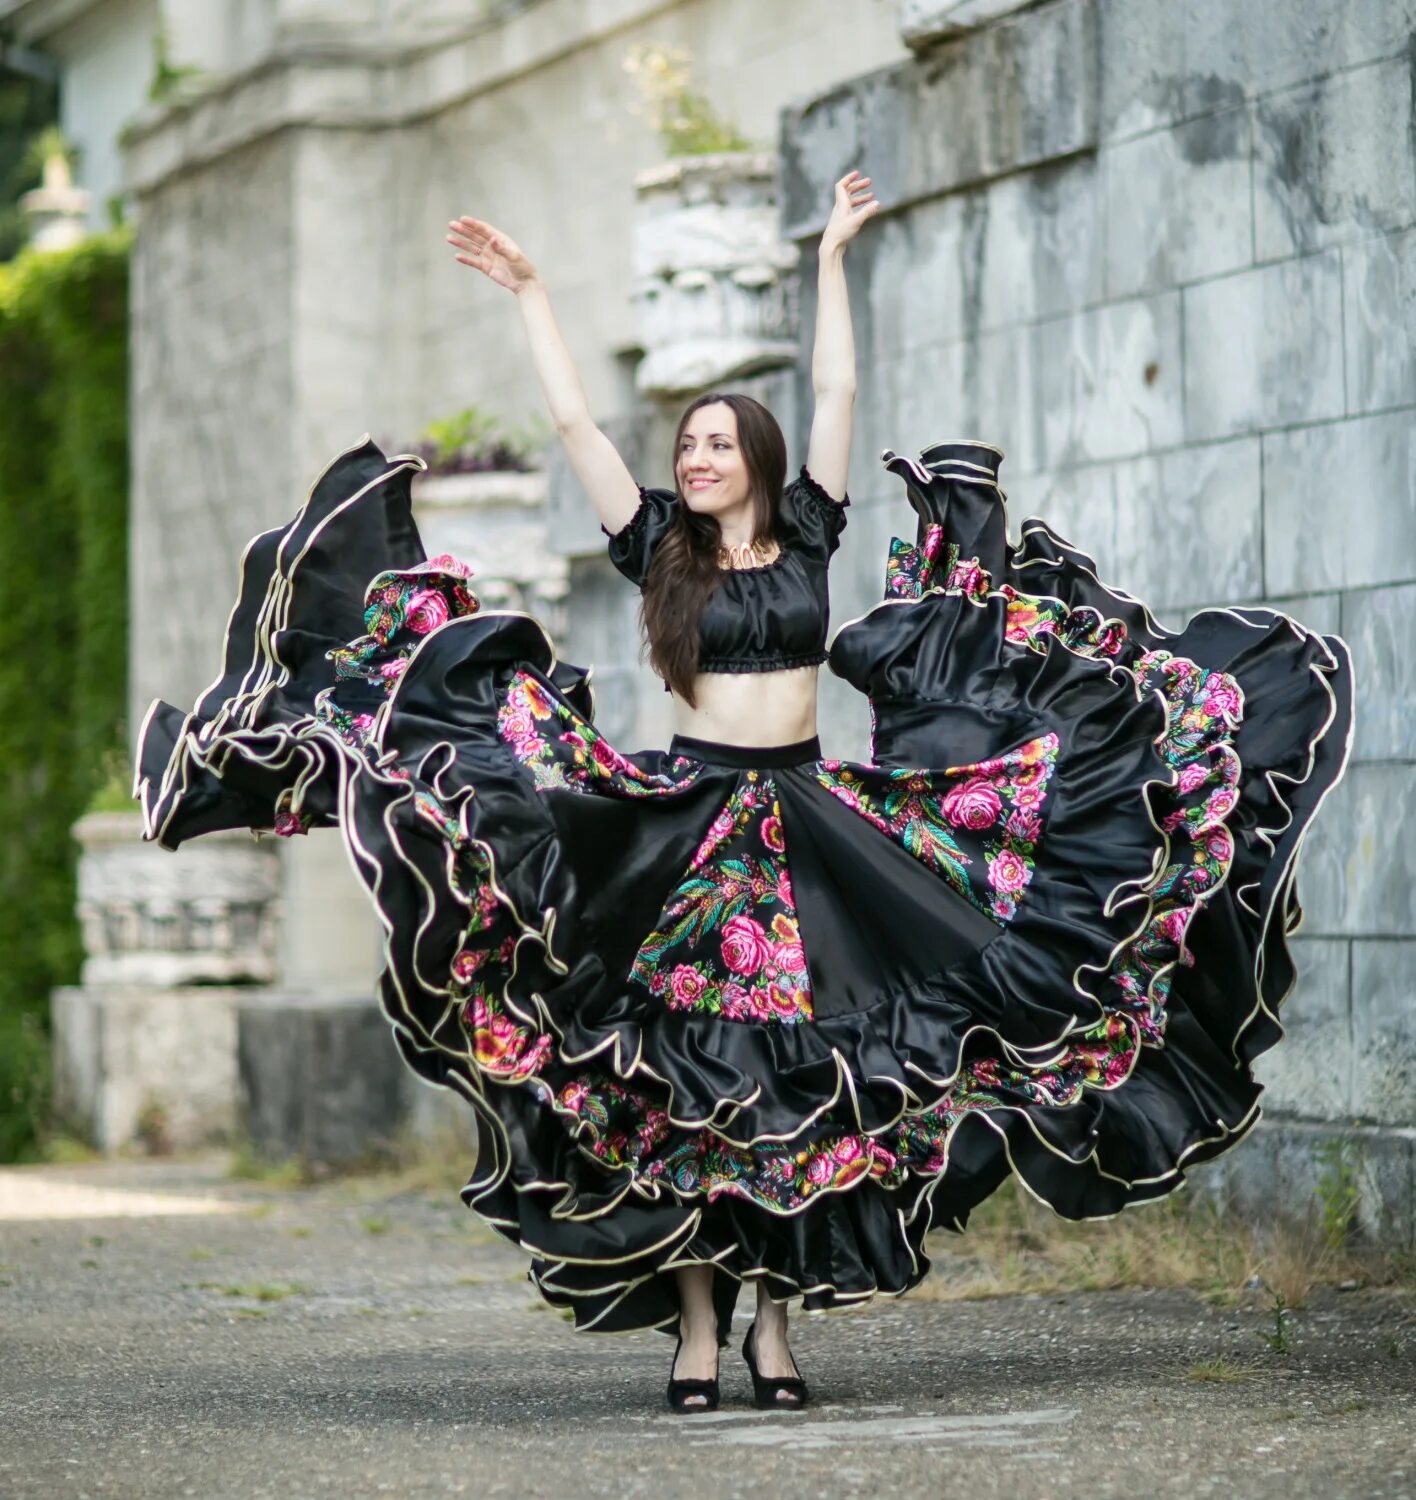 Купить цыганскую юбку. Цыганская юбка. Цыганская юбка для танца. Необычная цыганская юбка. Цыганская юбка цветок садовый.